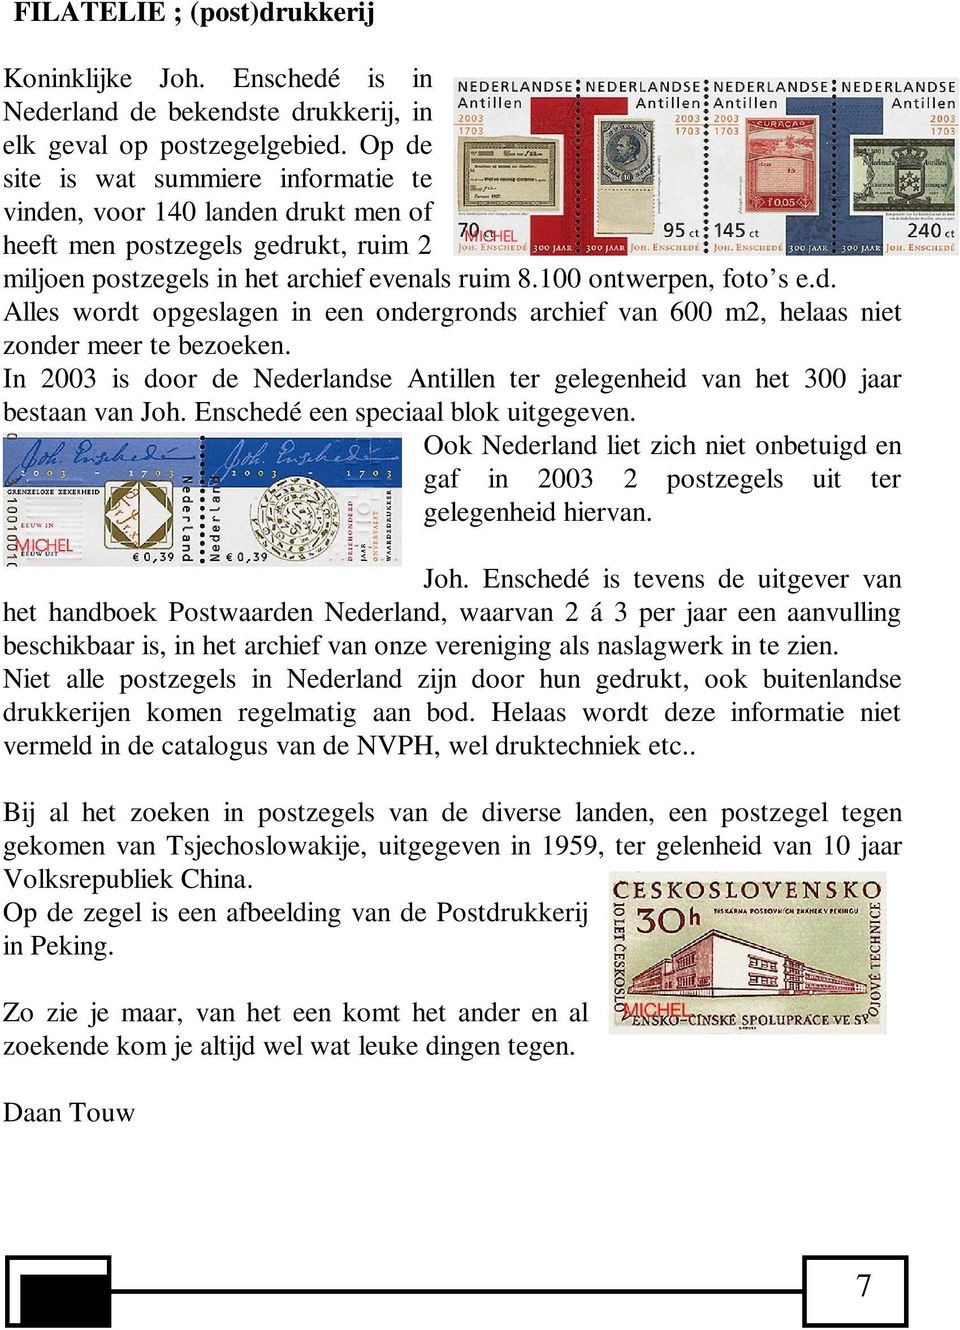 In 2003 is door de Nederlandse Antillen ter gelegenheid van het 300 jaar bestaan van Joh. Enschedé een speciaal blok uitgegeven.